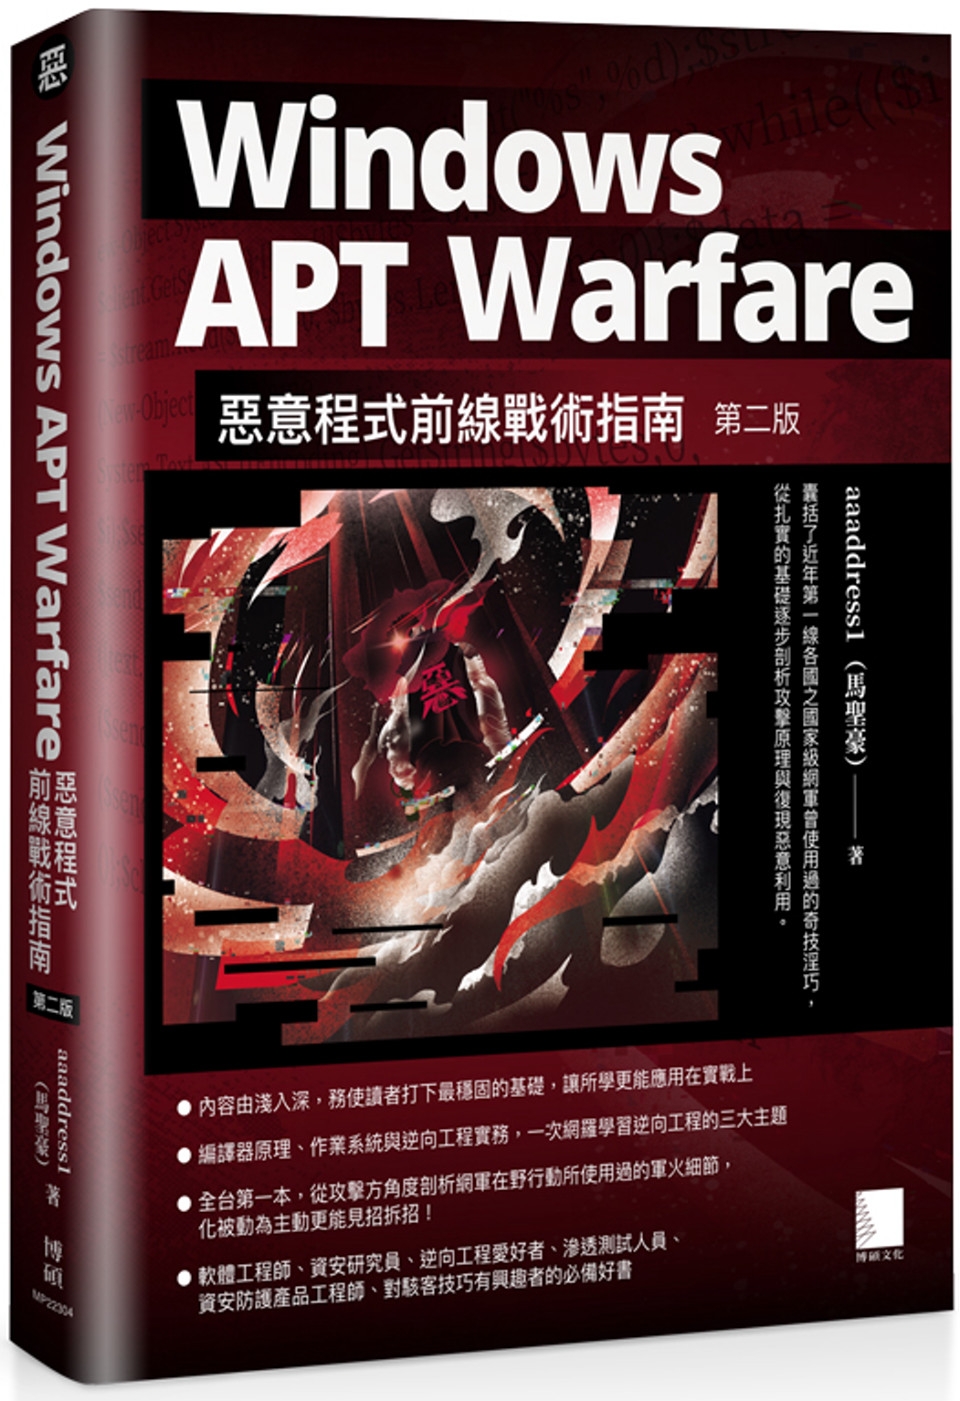 Windows APT Warfare：惡意程式前線戰術指南...